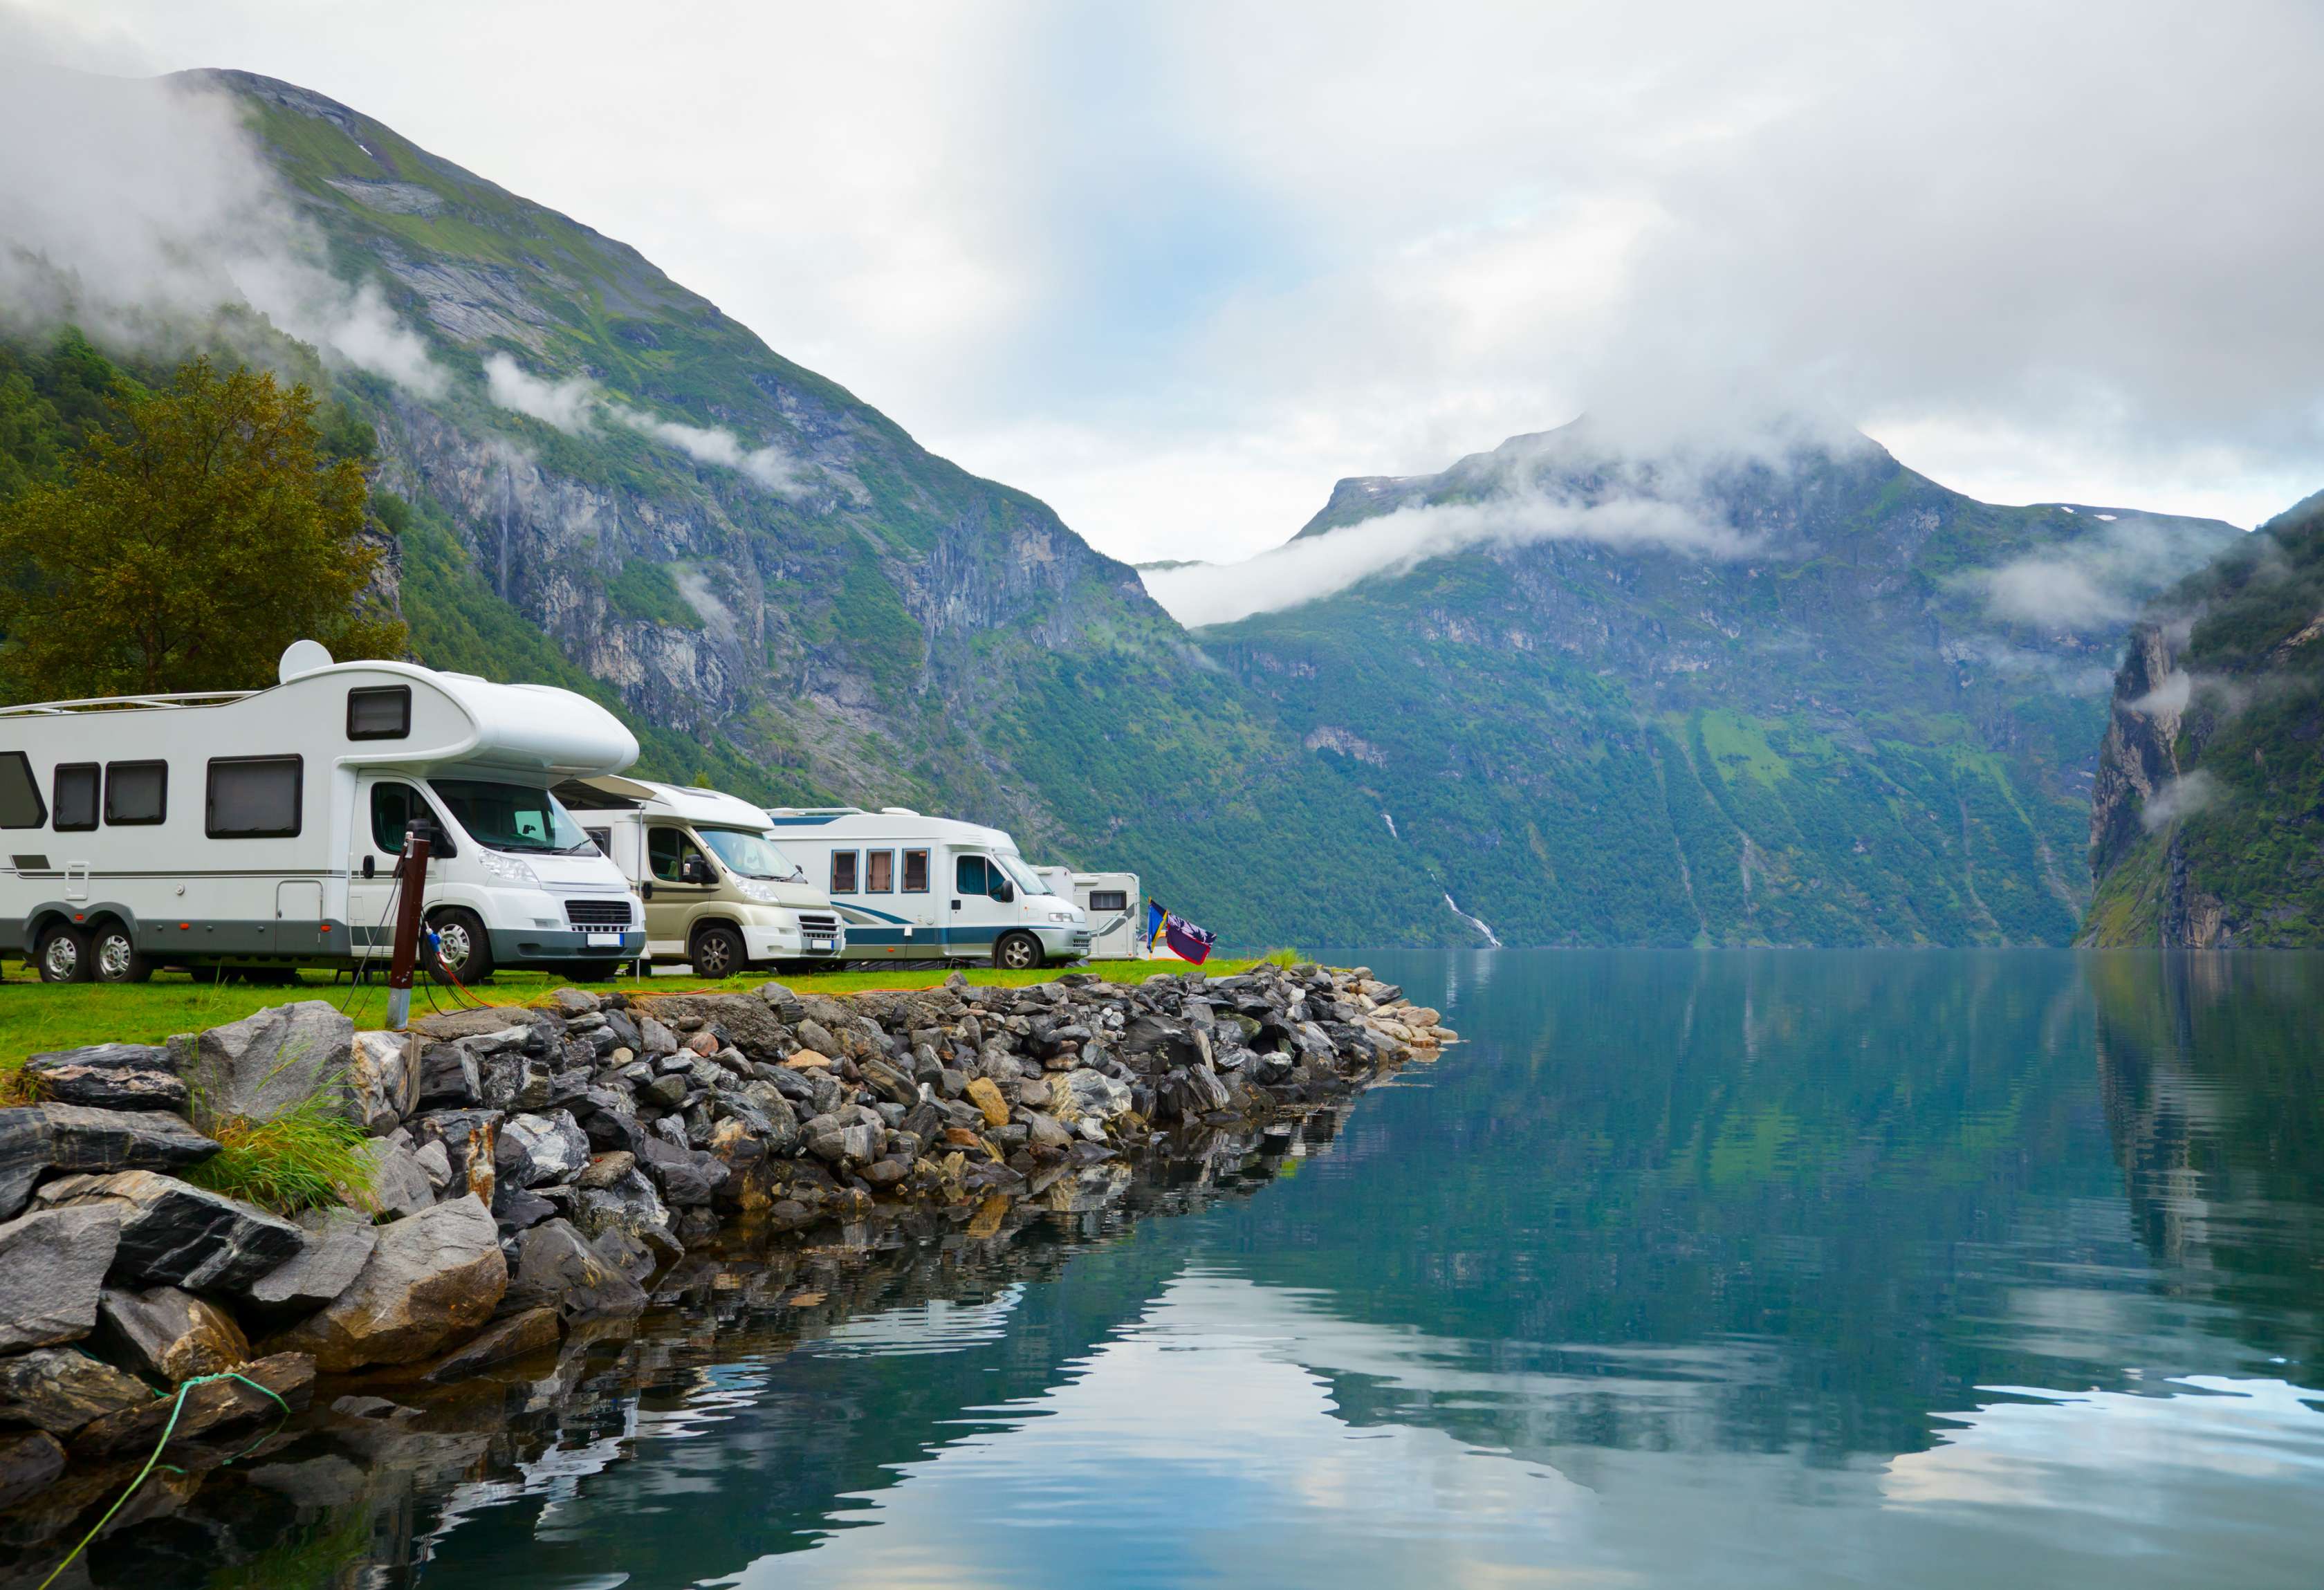 Wohnmobile stehen auf einem Campingplatz direkt am Ufer eines Bergsees